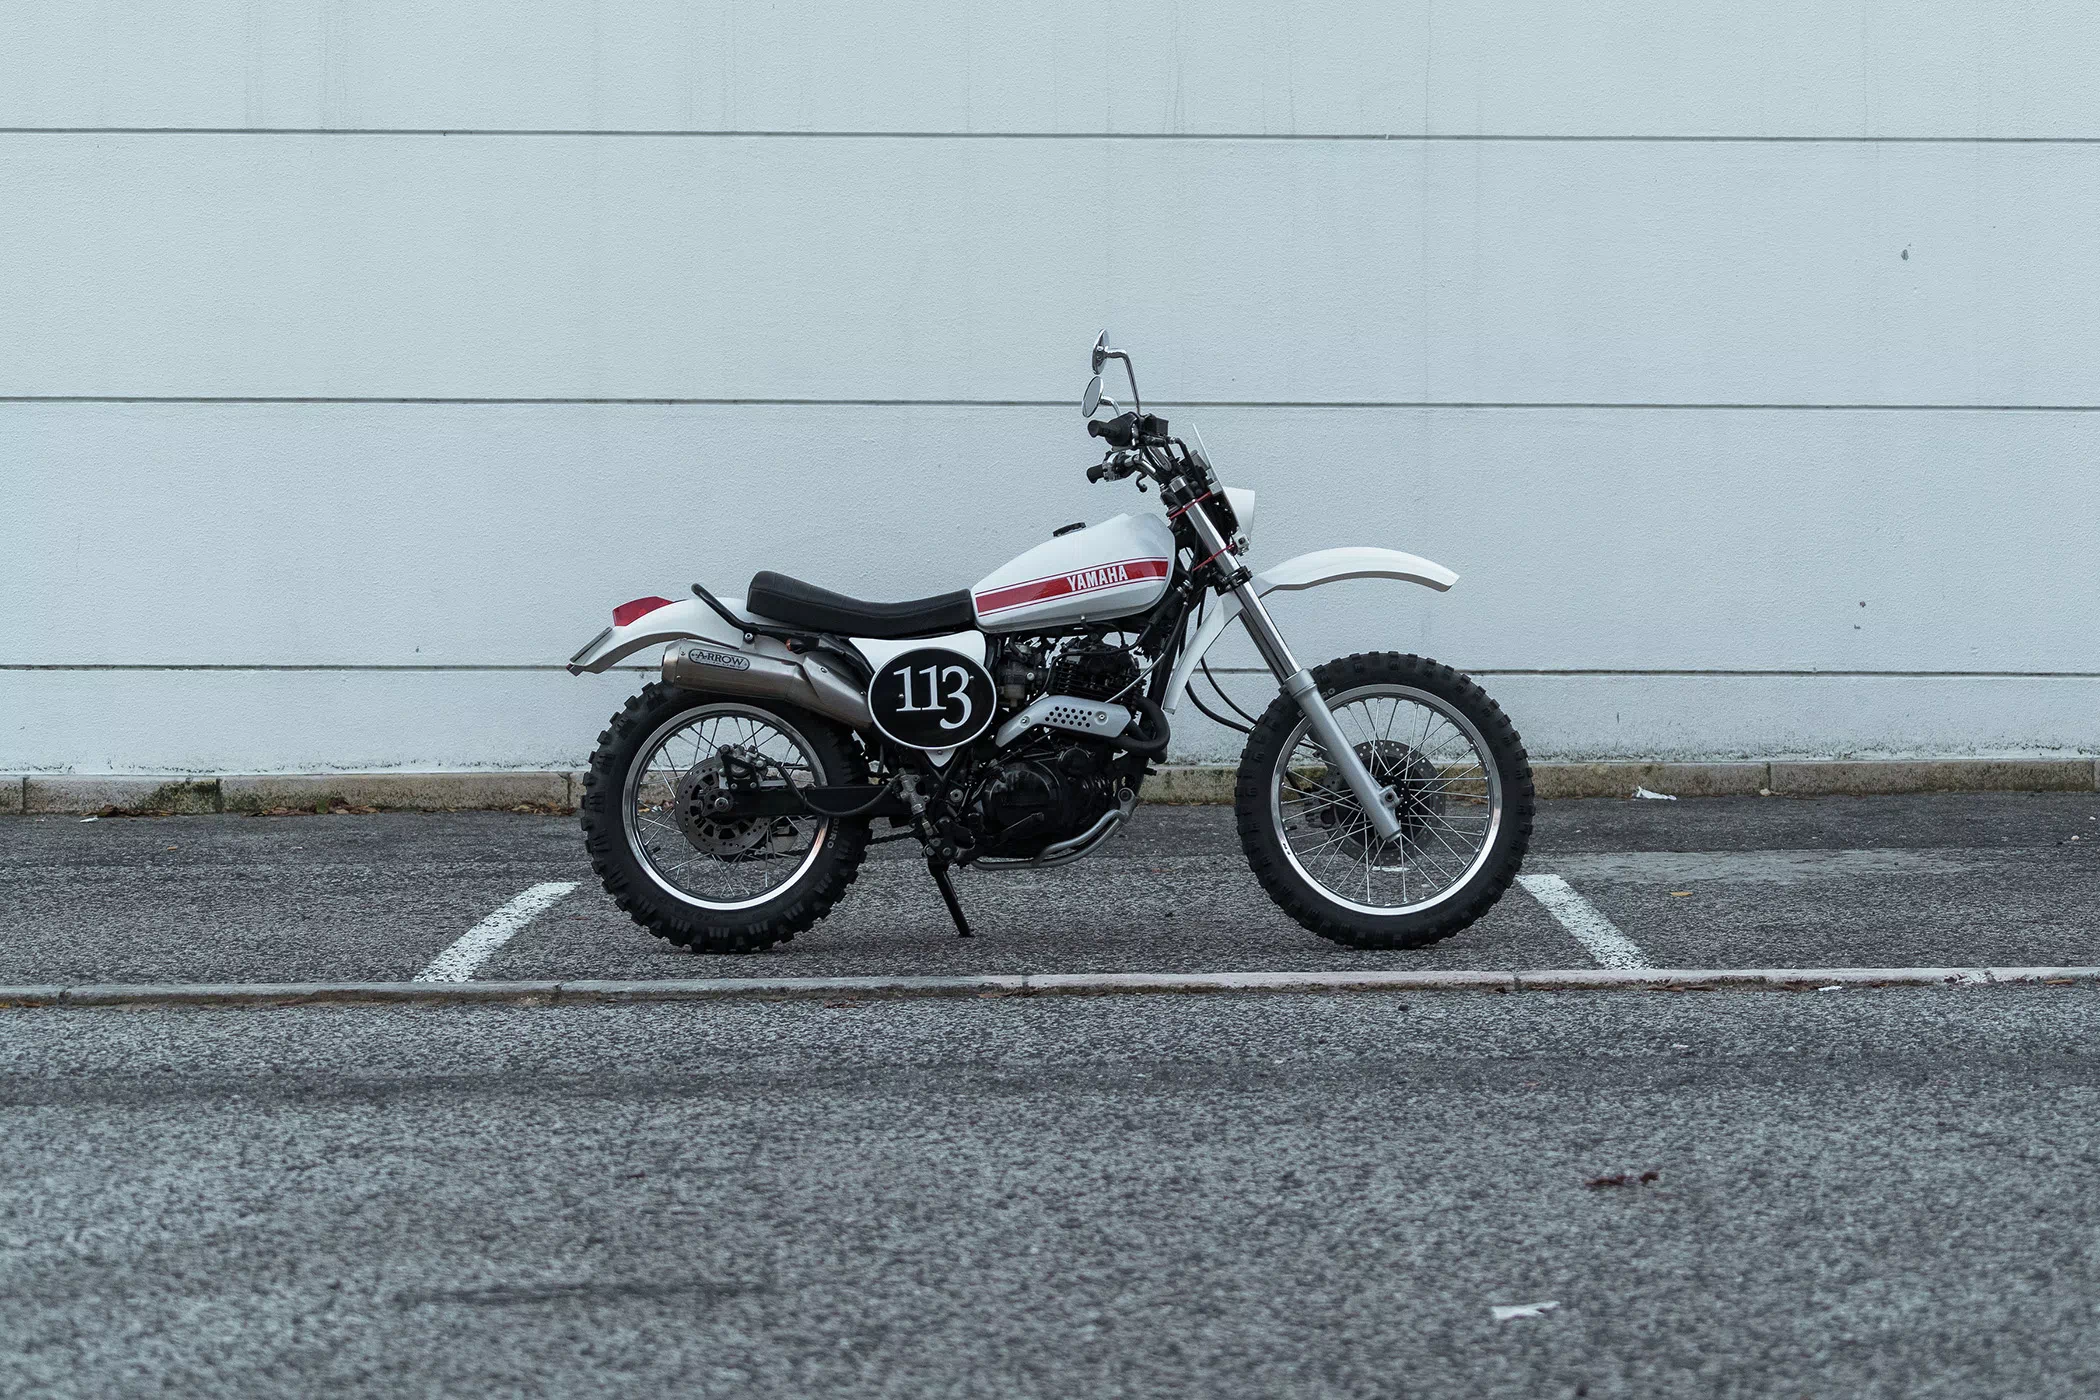 Unik-Motorcycles-Yamaha-XT-600-113-001